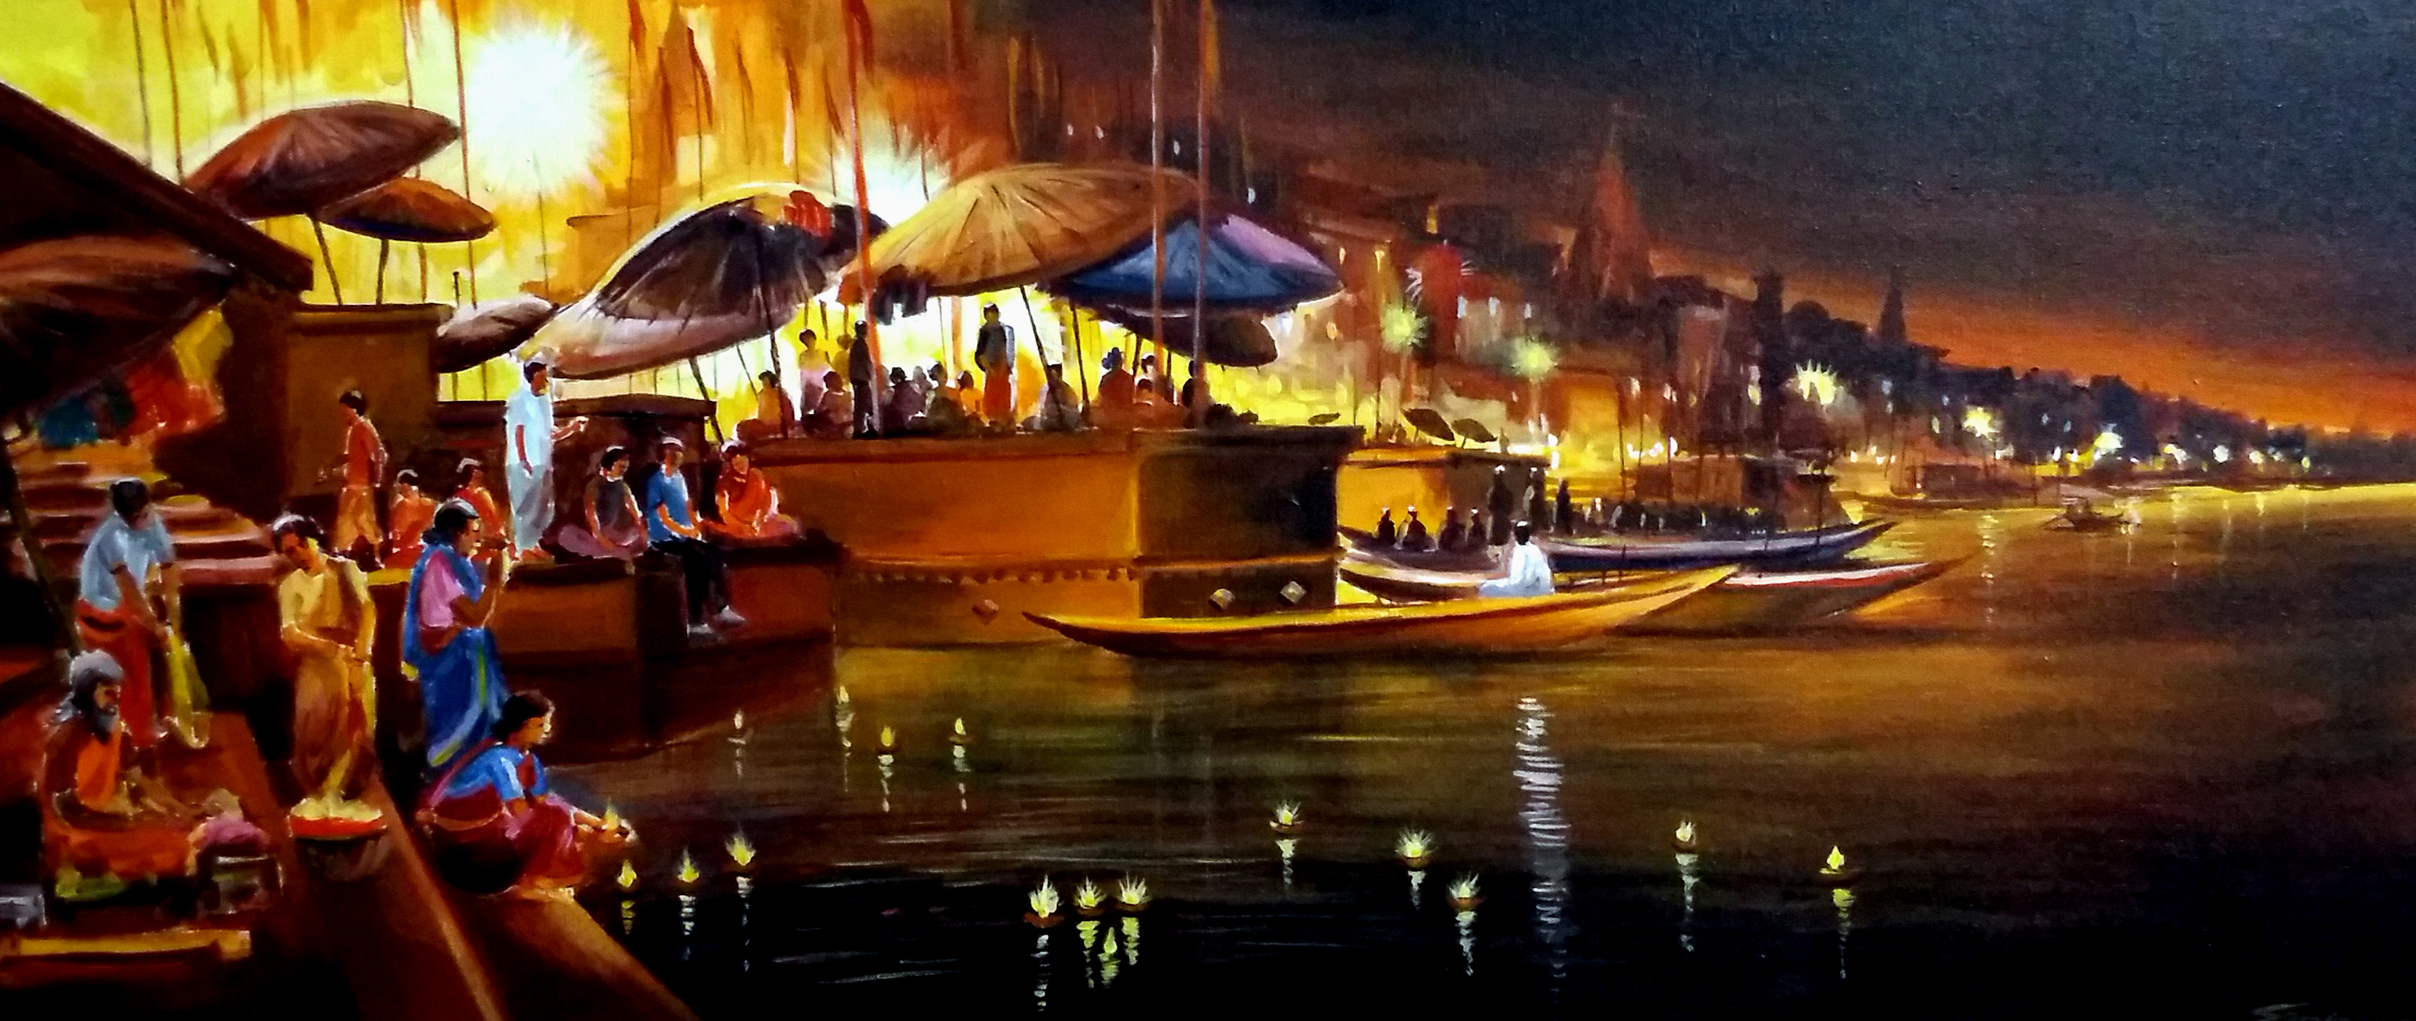 Festival Night at Varanasi Ghat 